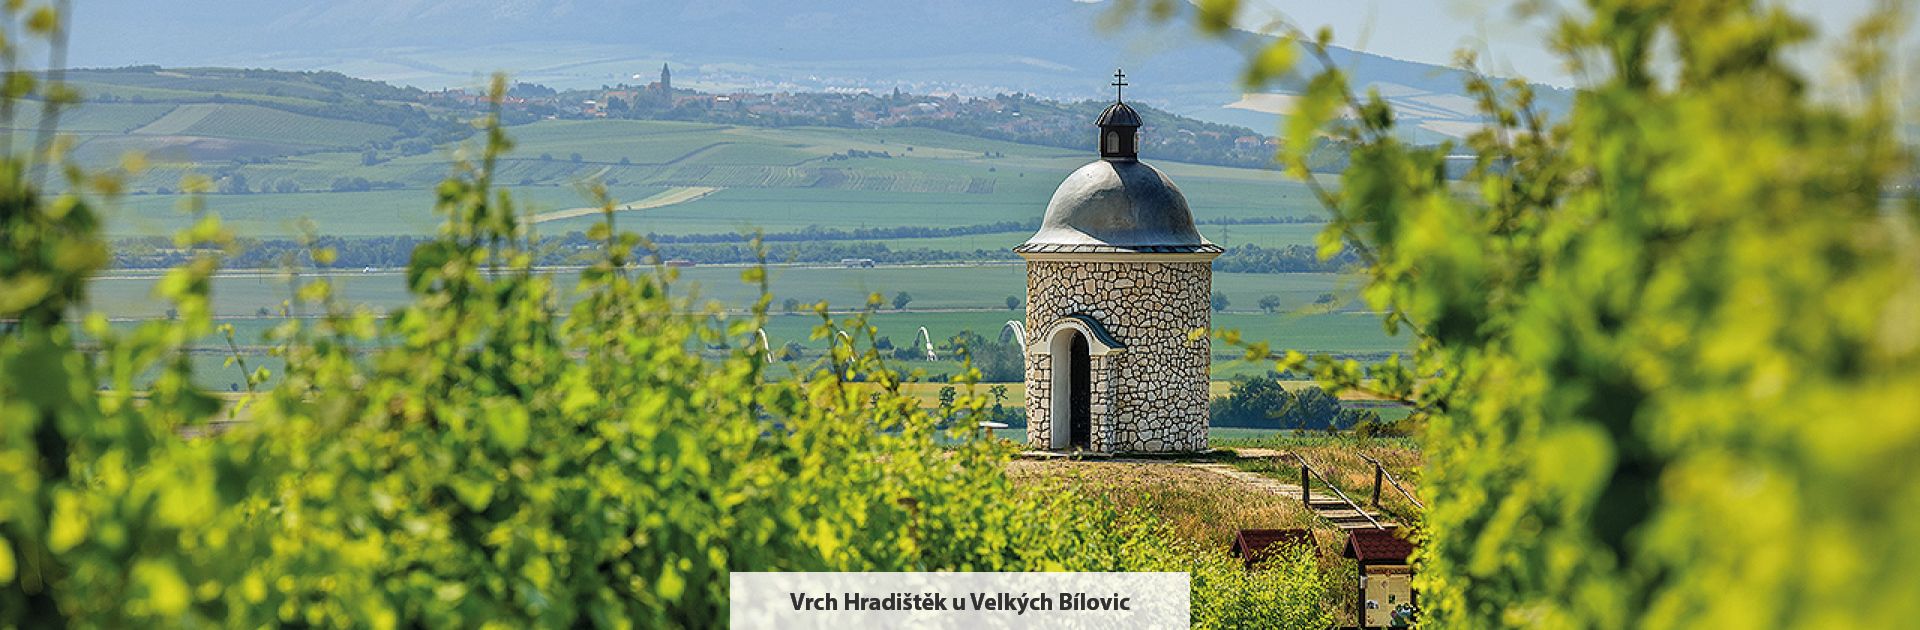 The hilltop of Hradištěk near Velké Bílovice, source: Libor Sváček, Vydavatelství MCU archive